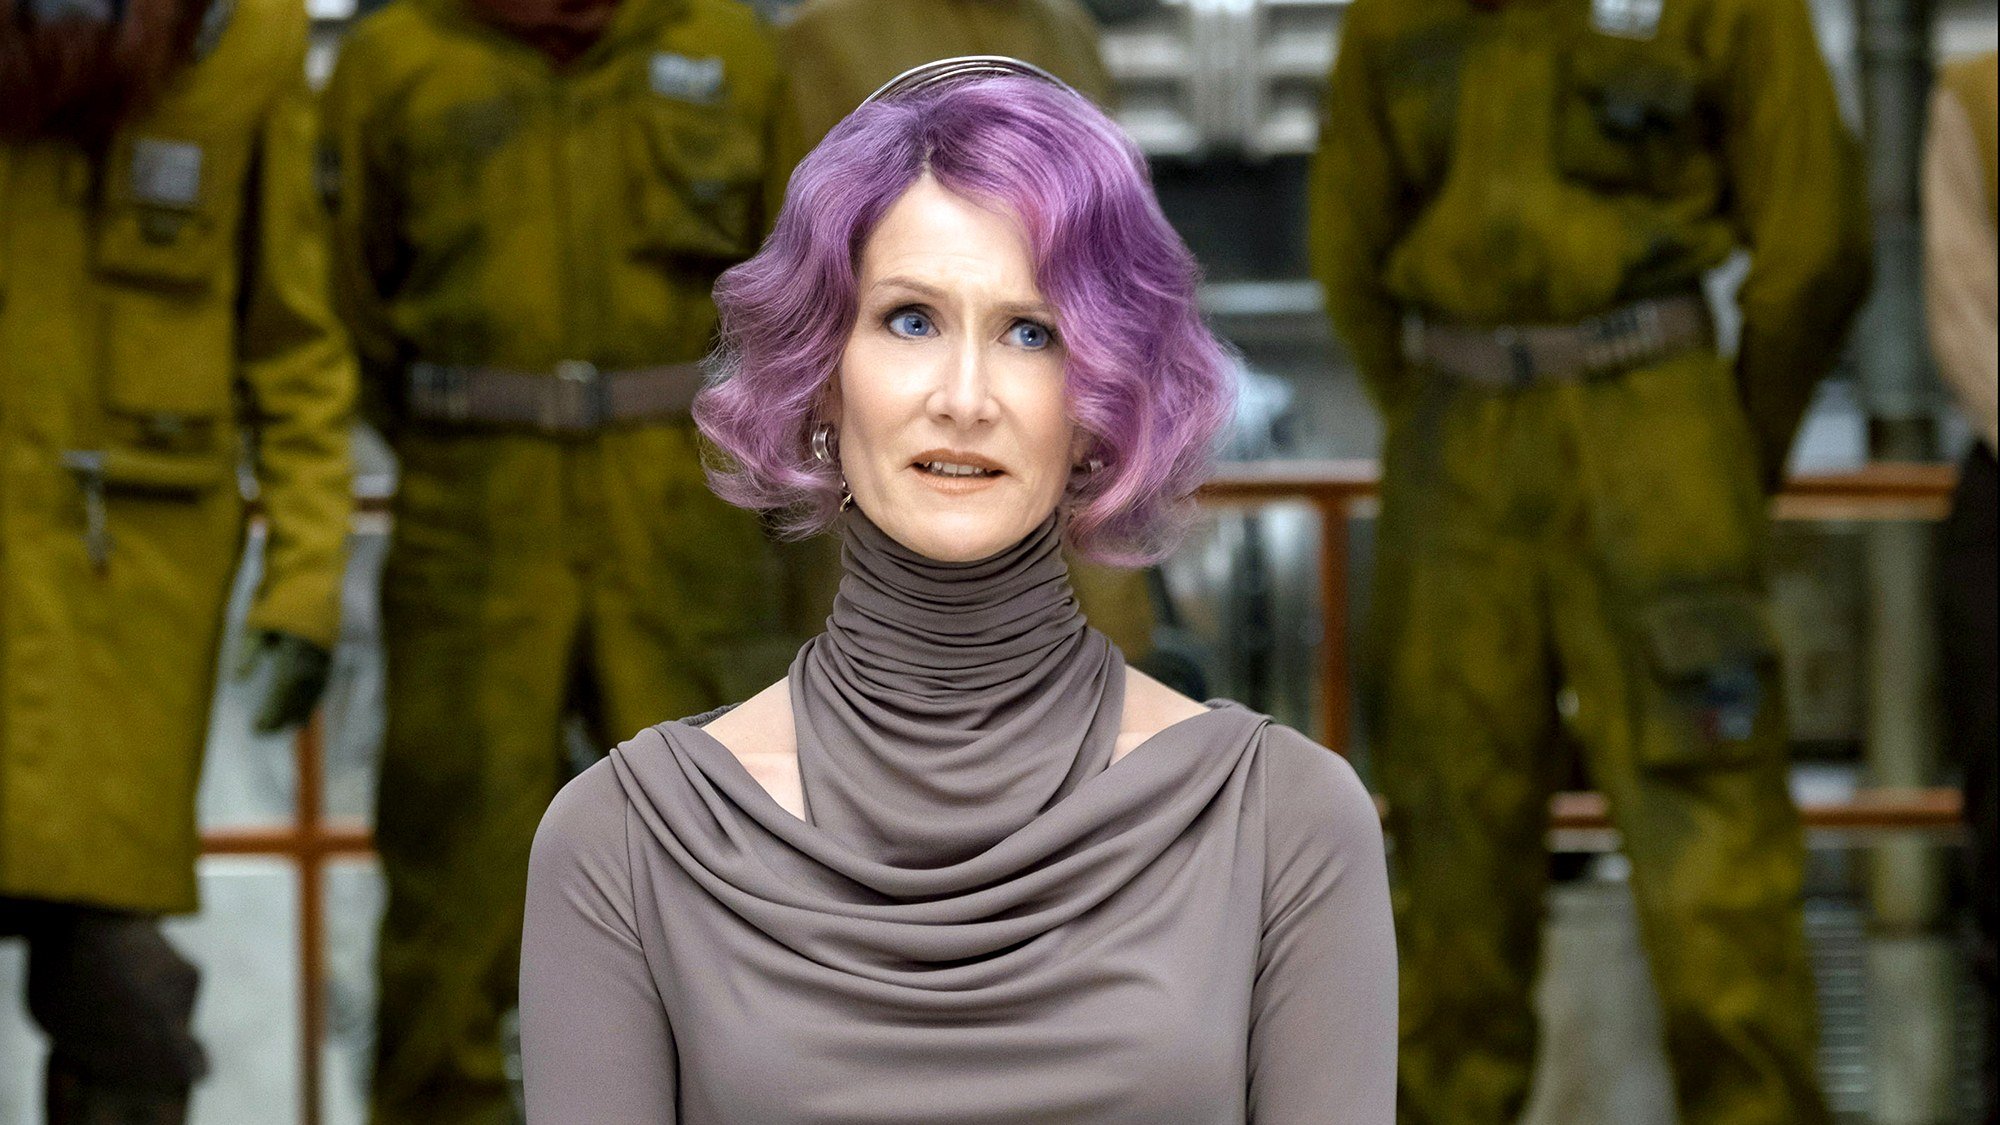 Holdo, interpretada por Laura Dern em Star Wars: Os Últimos Jedi seria a primeira personagem assumidamente gay em Star Wars, porém o tema não foi abordado no filme (Fonte: Lucasfilm/Divulgação)